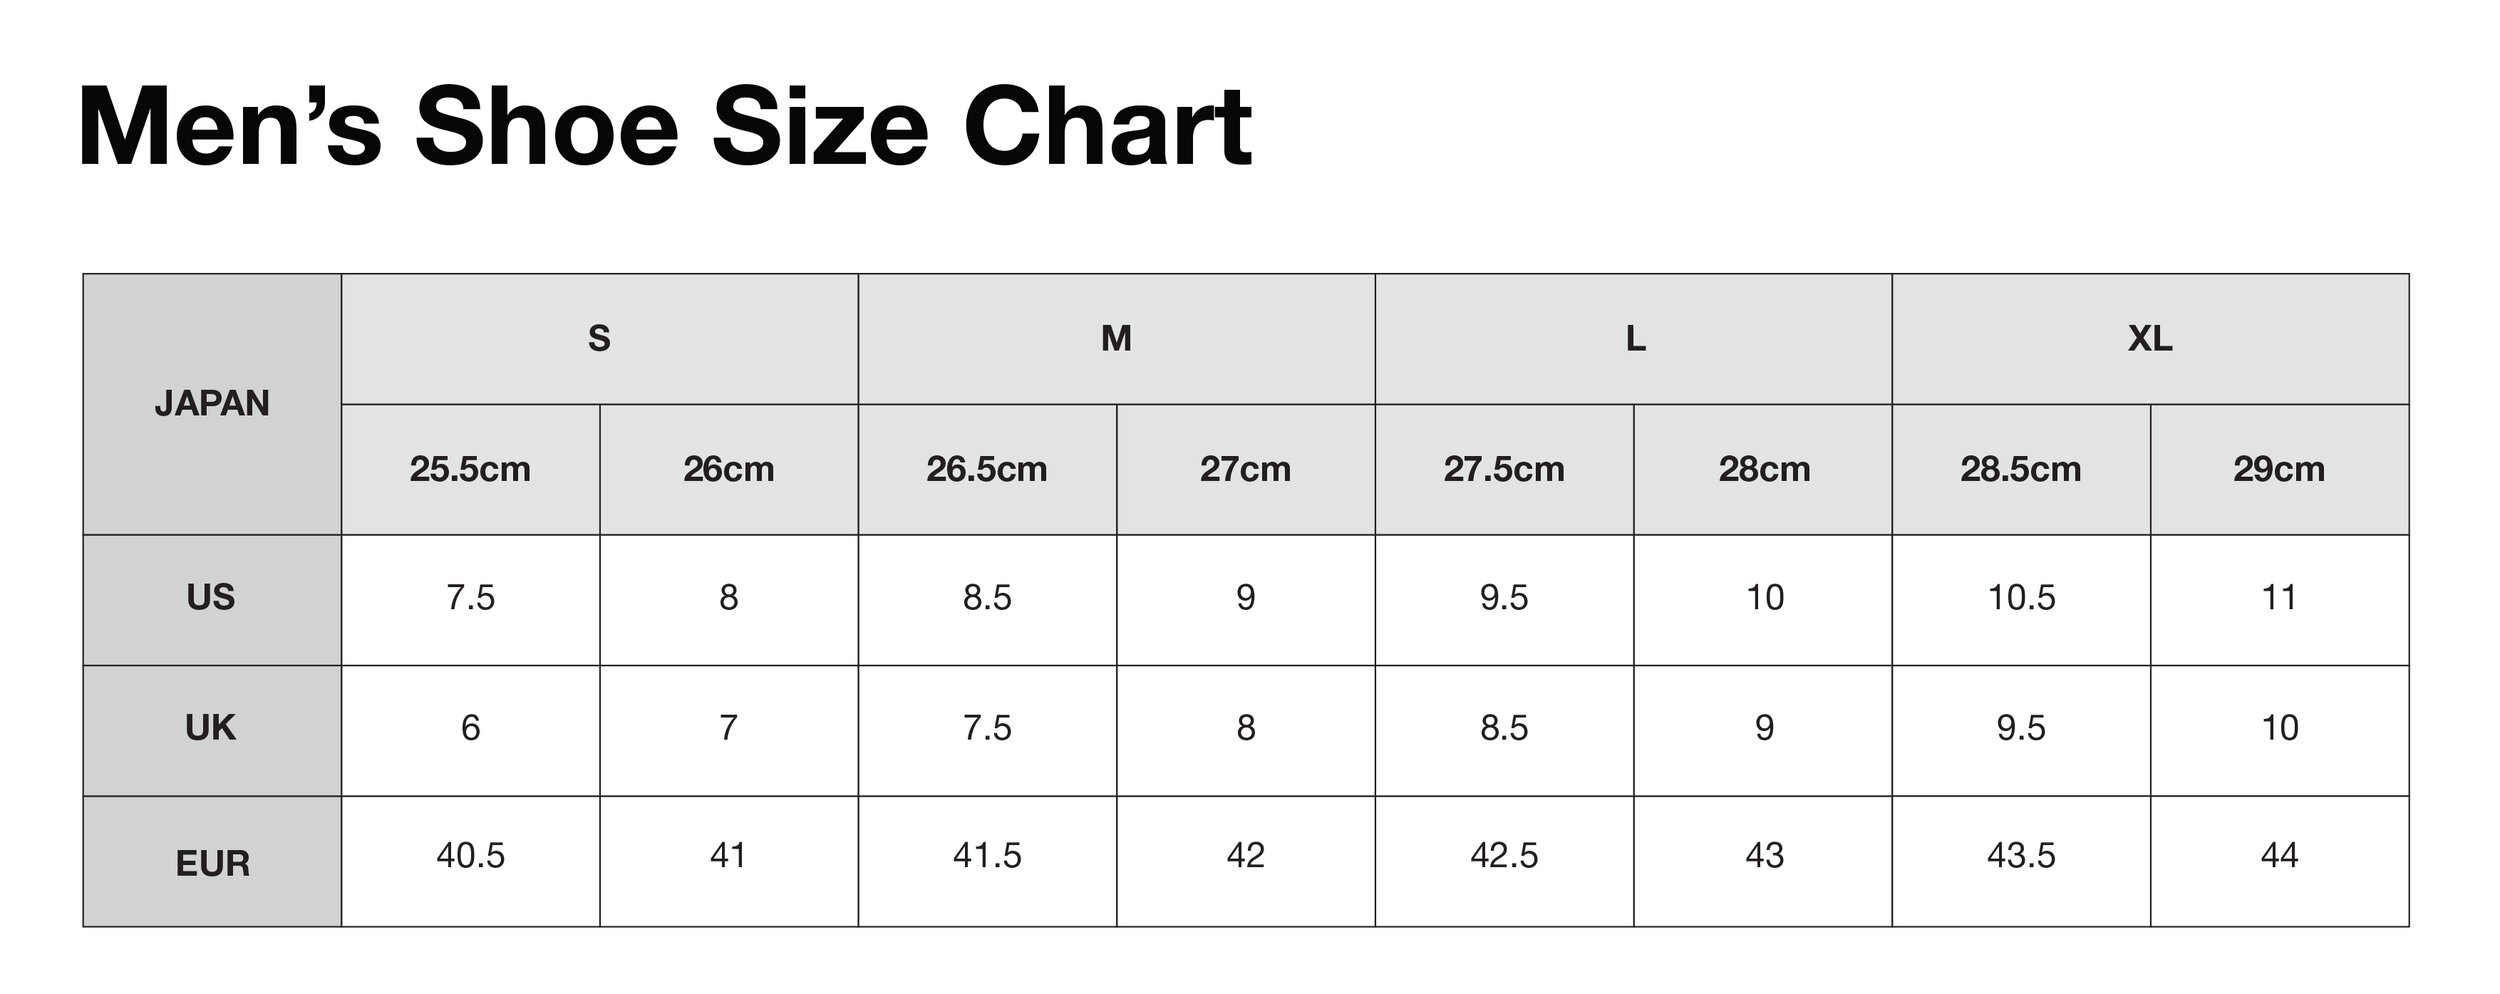 27 cm women's shoe size